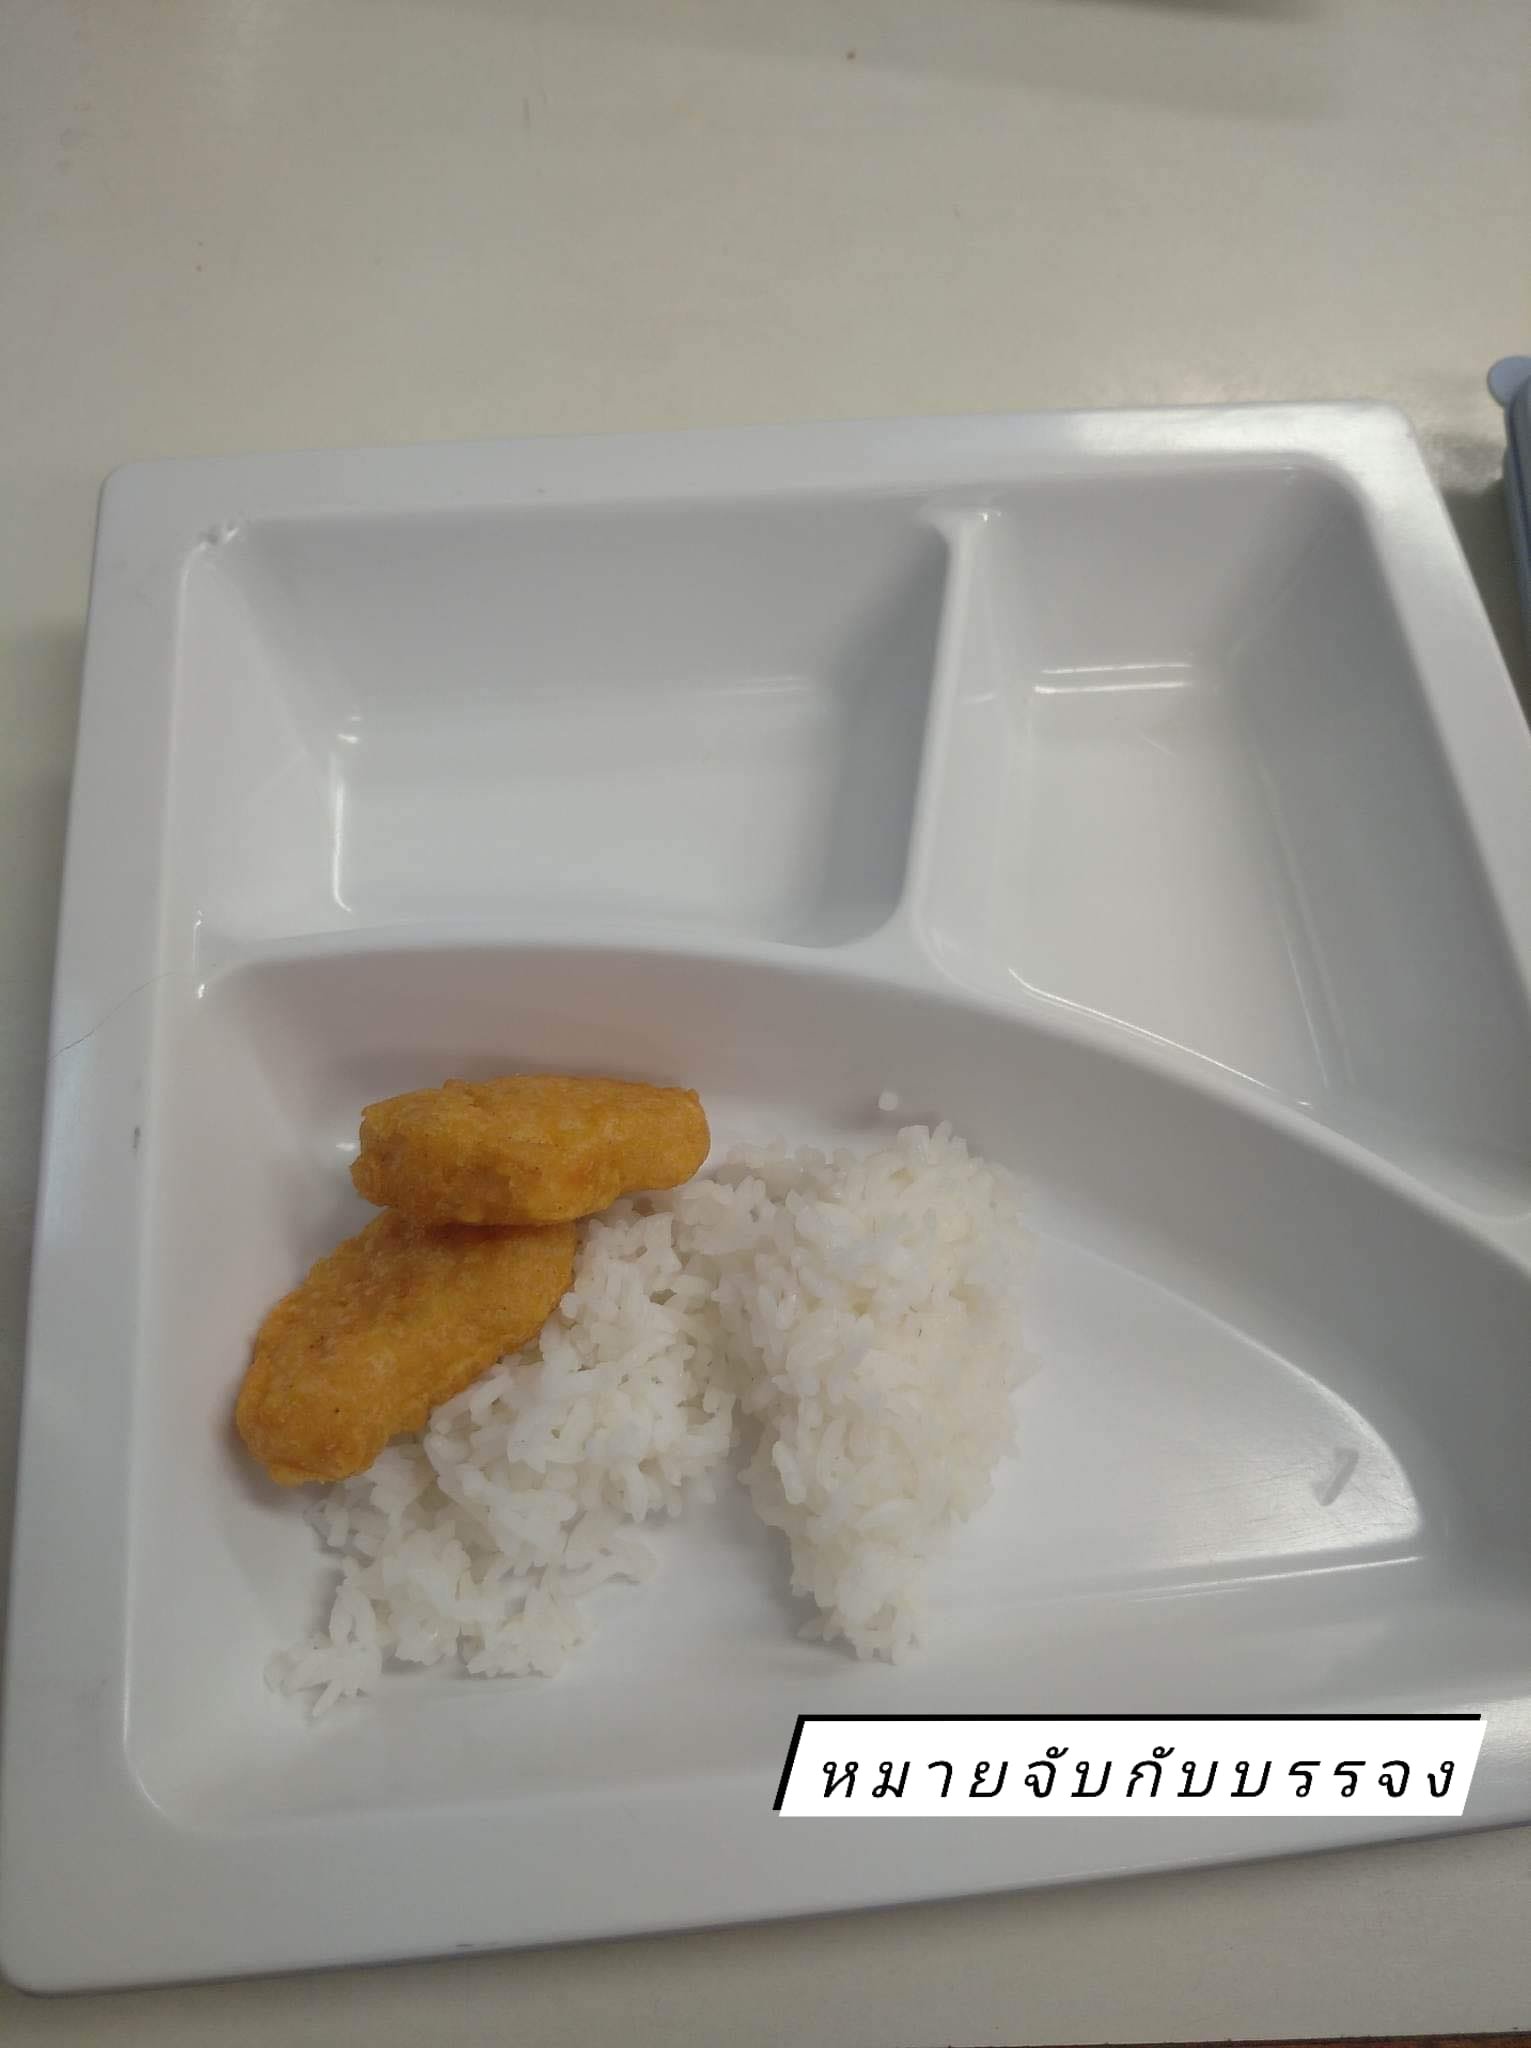 ภาพอาหารกลางวันในถาดอาหารของเด็กนักเรียน โรงเรียนแห่งหนึ่ง 